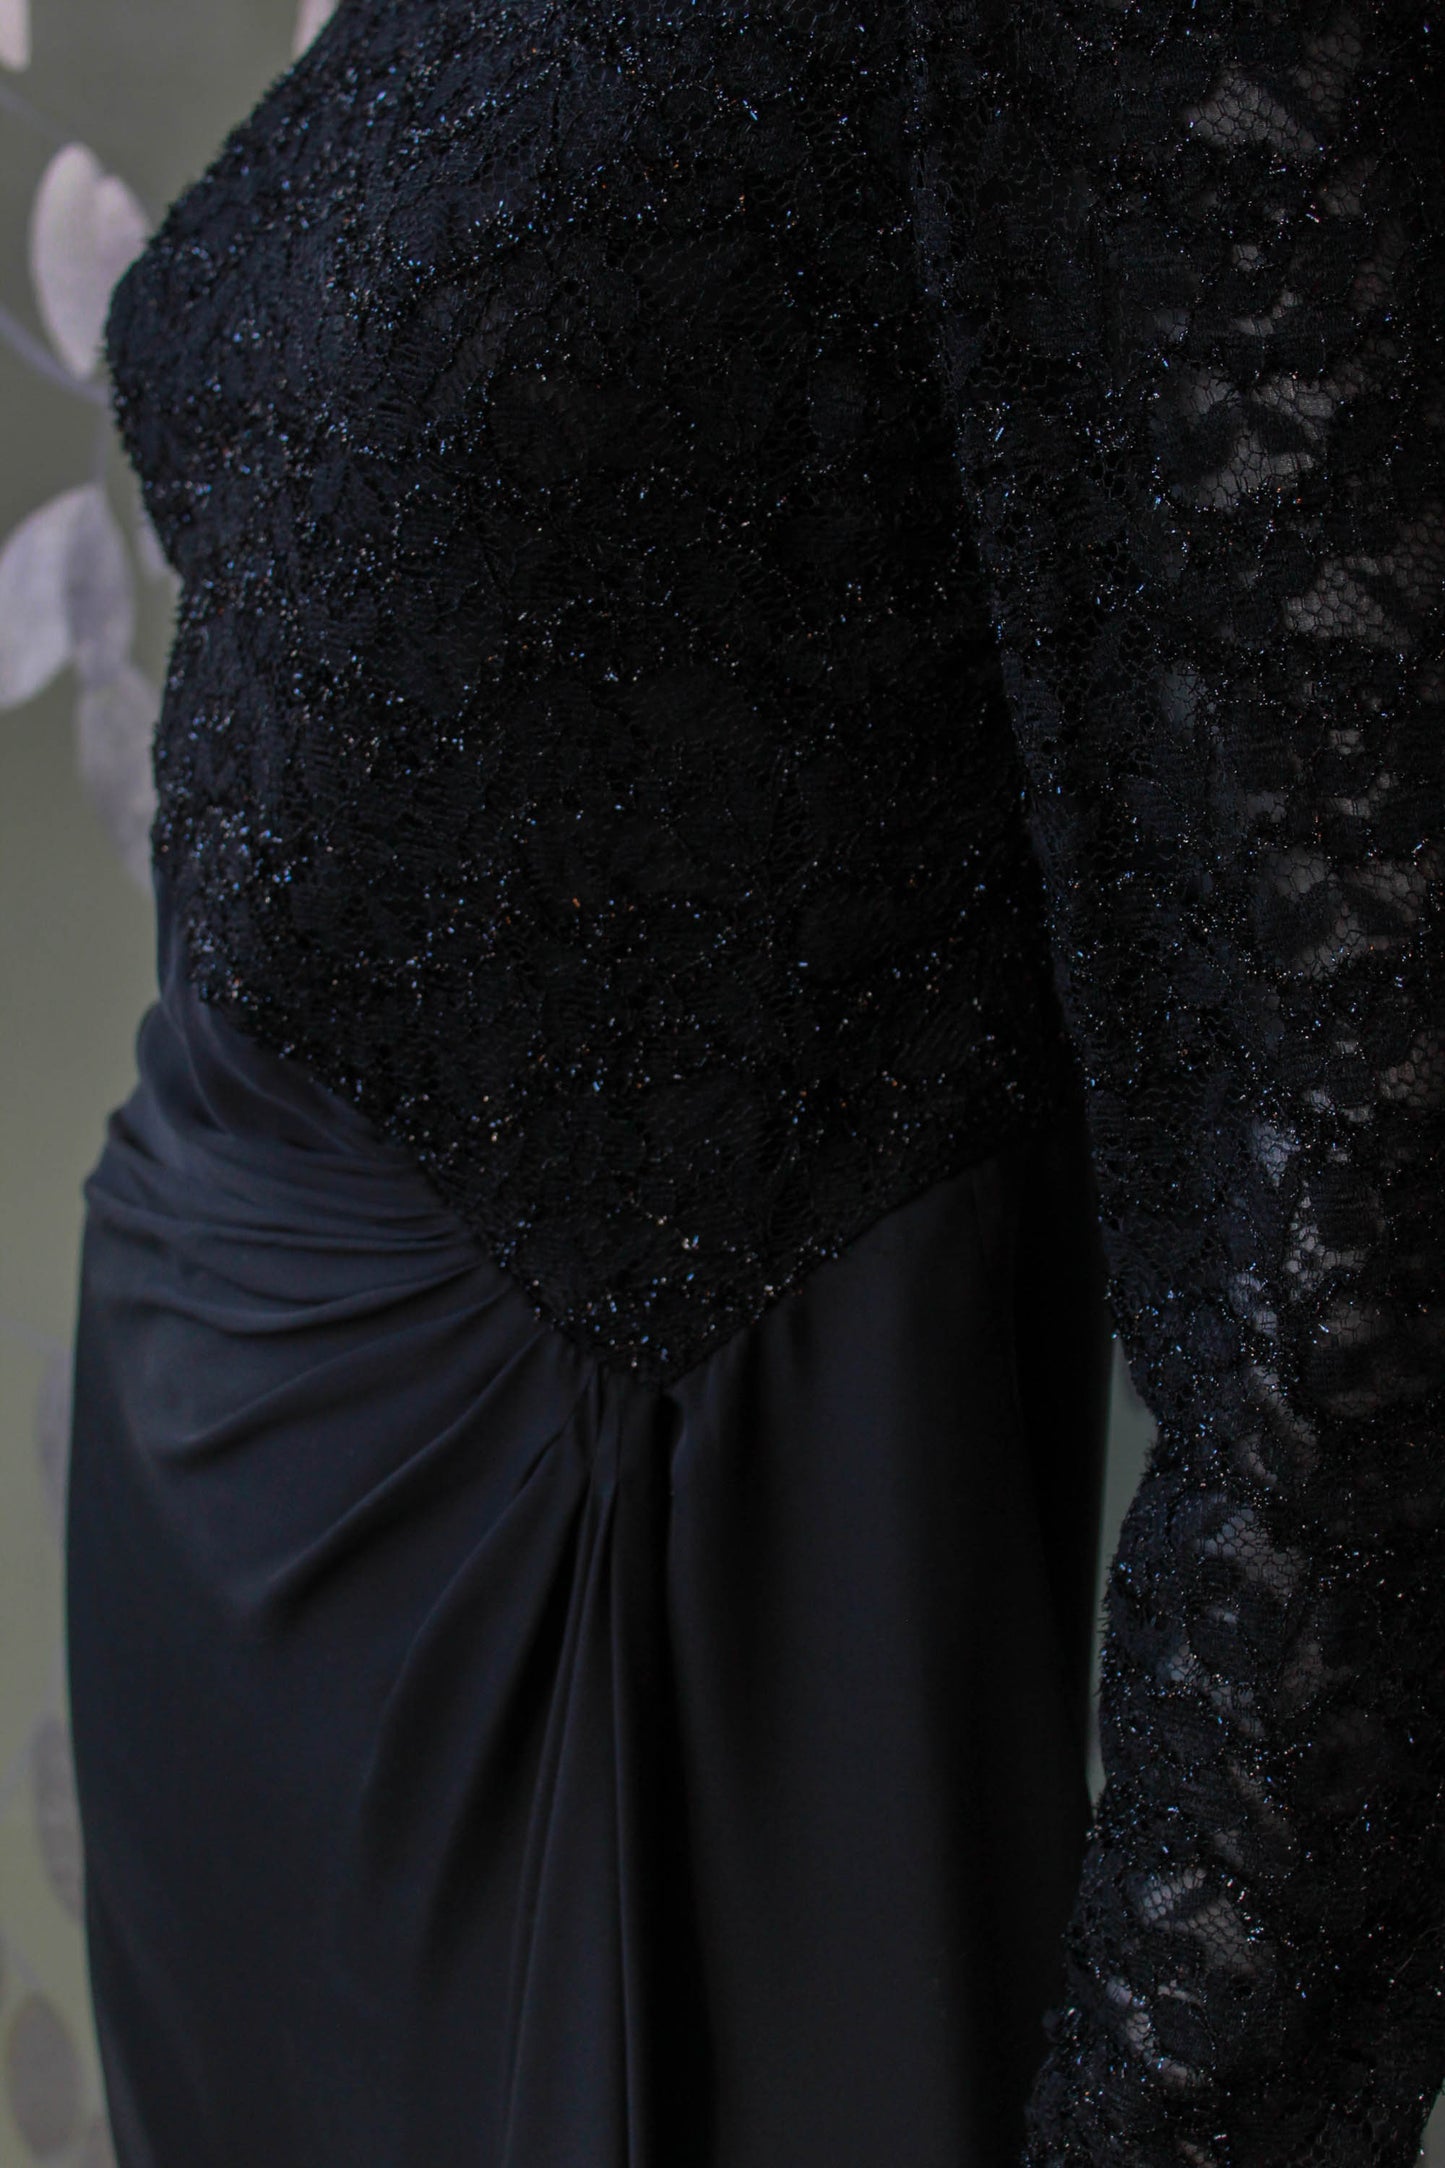 80s Black Metallic Lace Silk Carolina Herrera Dress, Long Sleeves, knee length vintage designer fashion